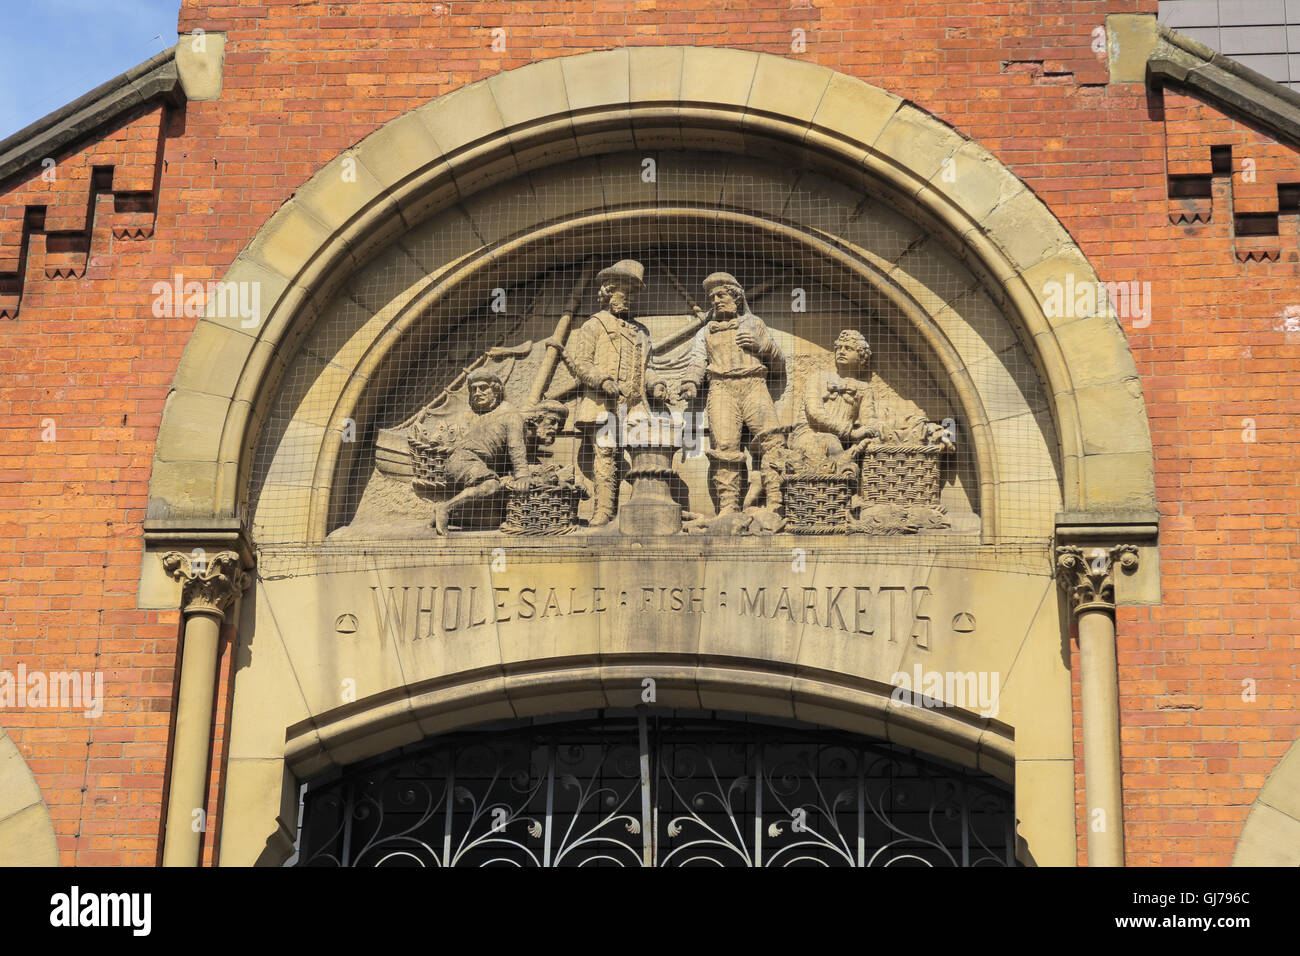 Smithfield vecchi mercati del pesce figure scolpite,il centro città di Manchester, Inghilterra, Regno Unito Foto Stock